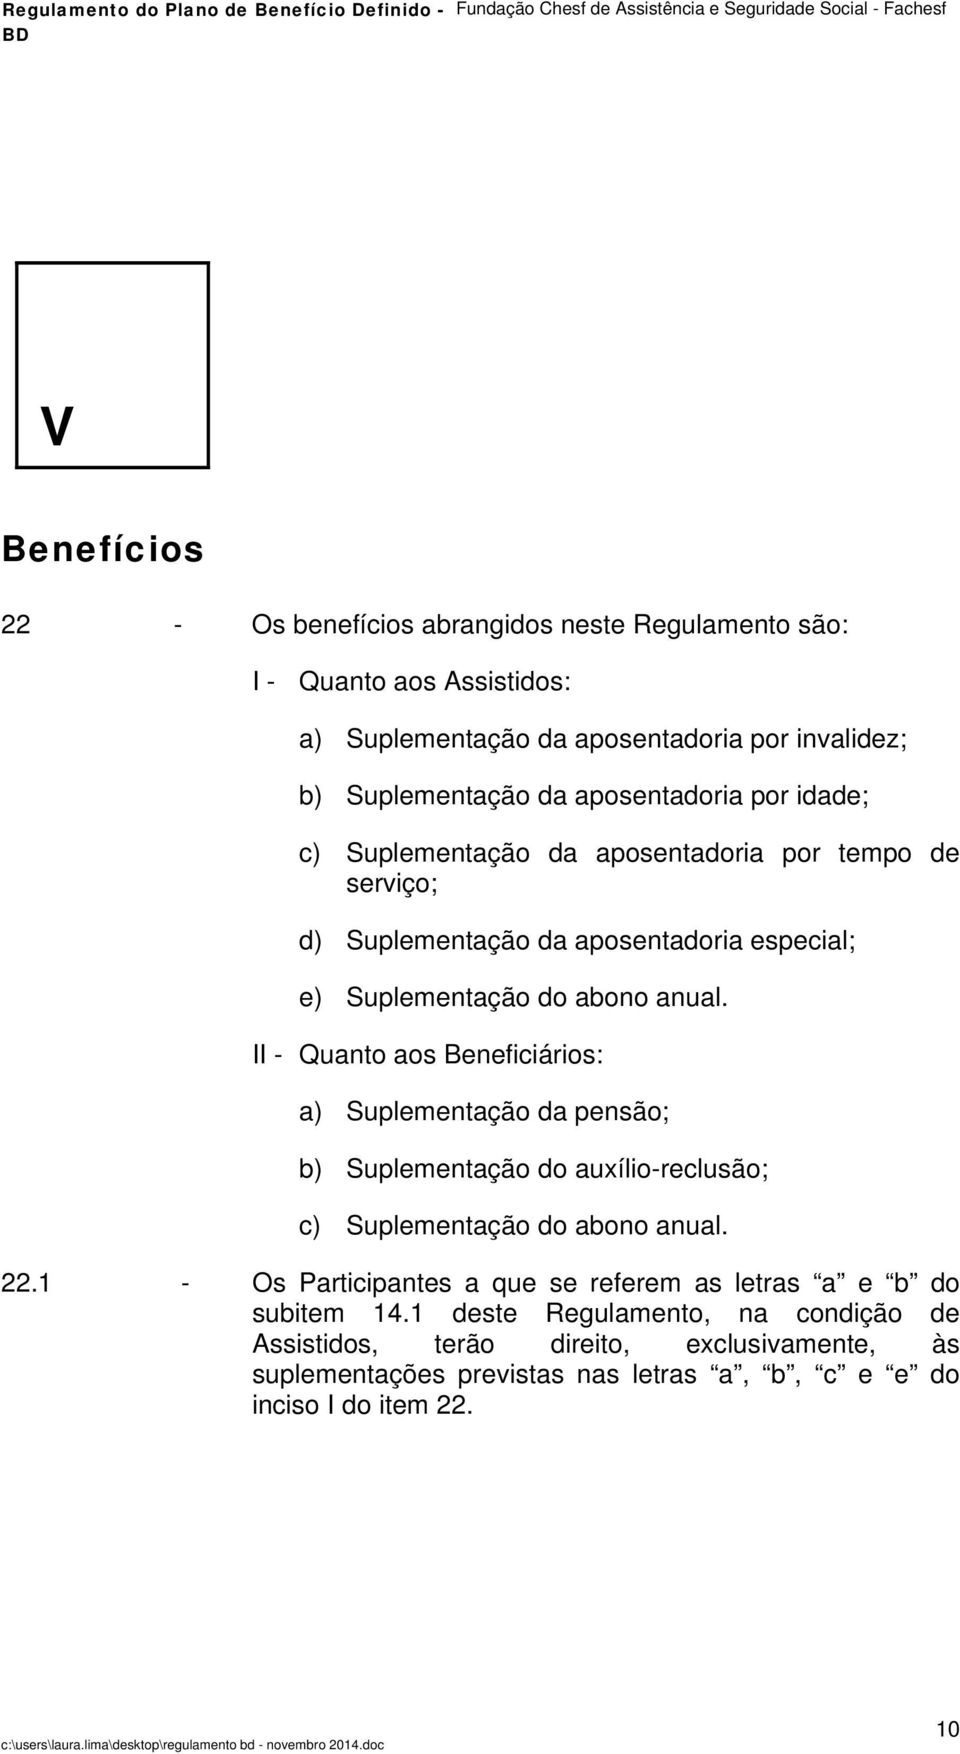 II - Quanto aos Beneficiários: a) Suplementação da pensão; b) Suplementação do auxílio-reclusão; c) Suplementação do abono anual. 22.